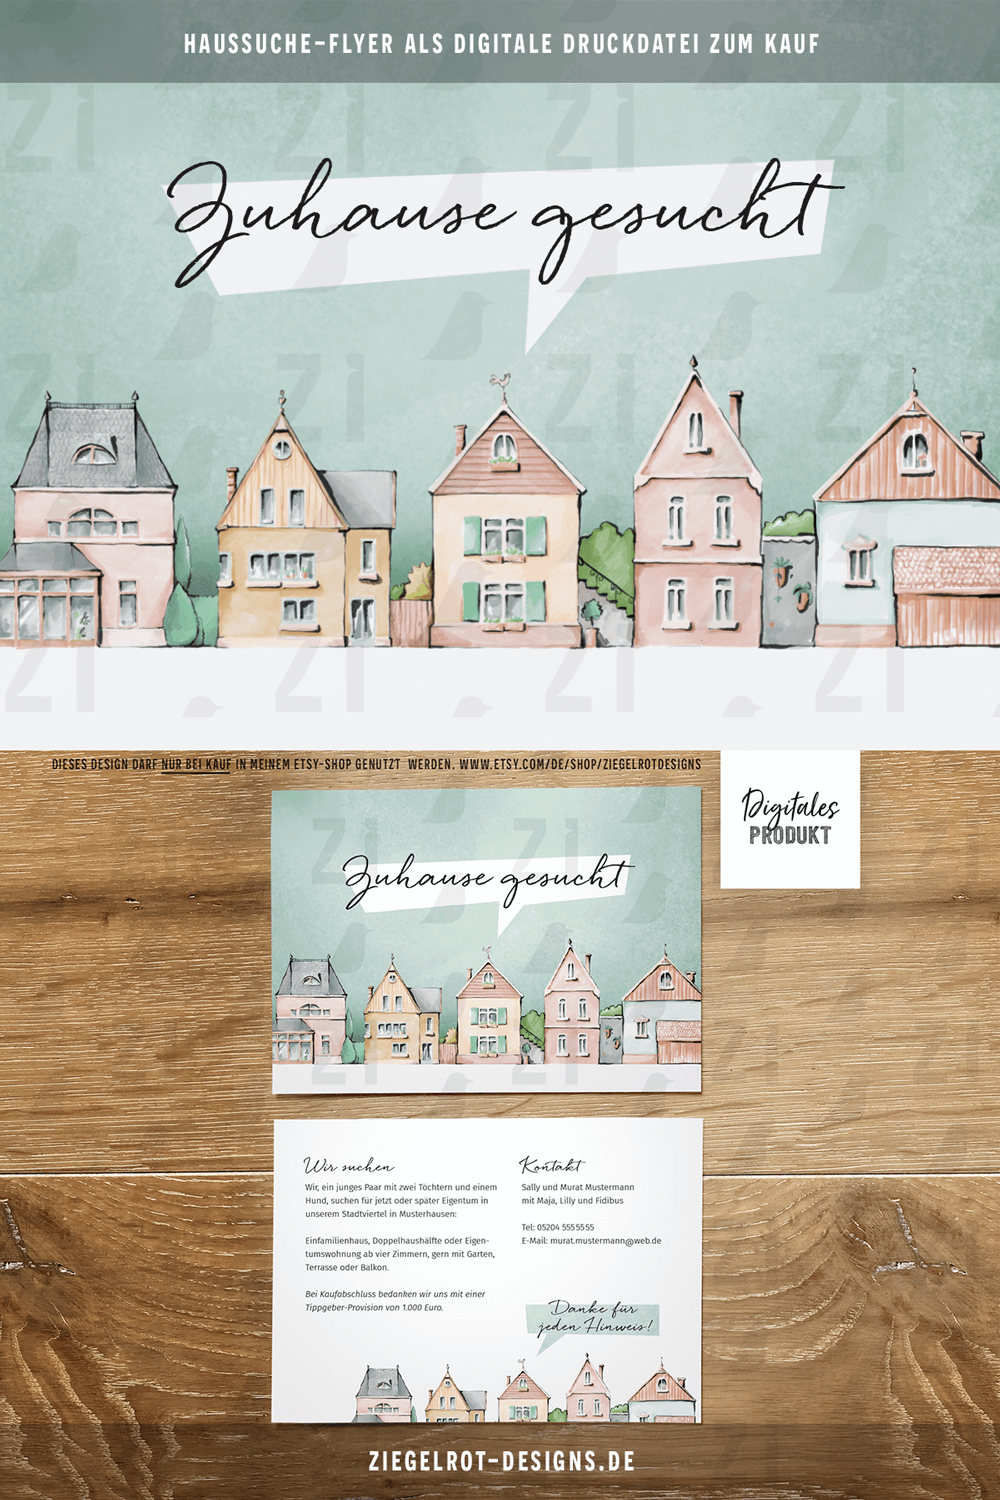 Digitale Druckdatei mit Individualisierung für Haussuche-Flyer, Motiv Hübsche Stadthäuser